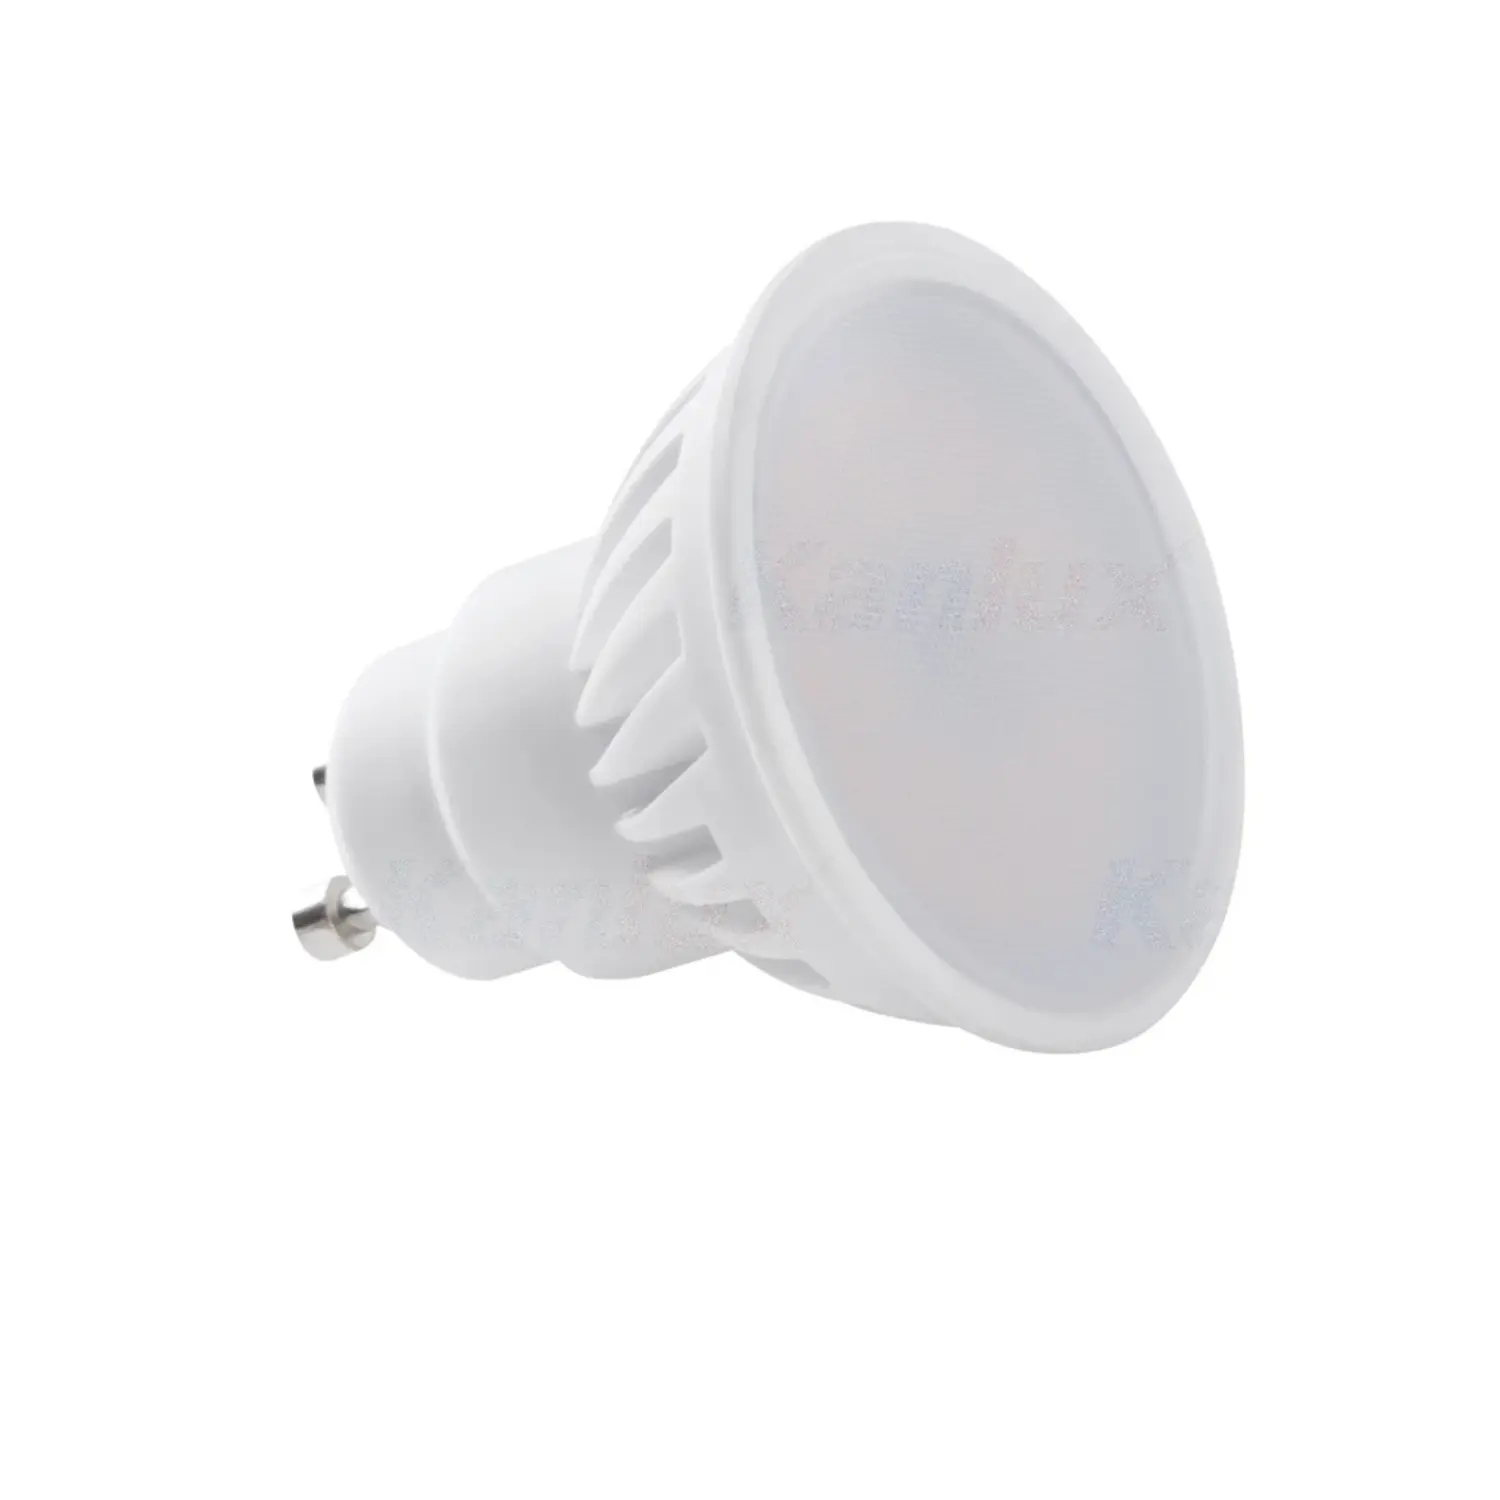 immagine del prodotto lampadina led tedi ceramica gu10 9 watt bianco naturale